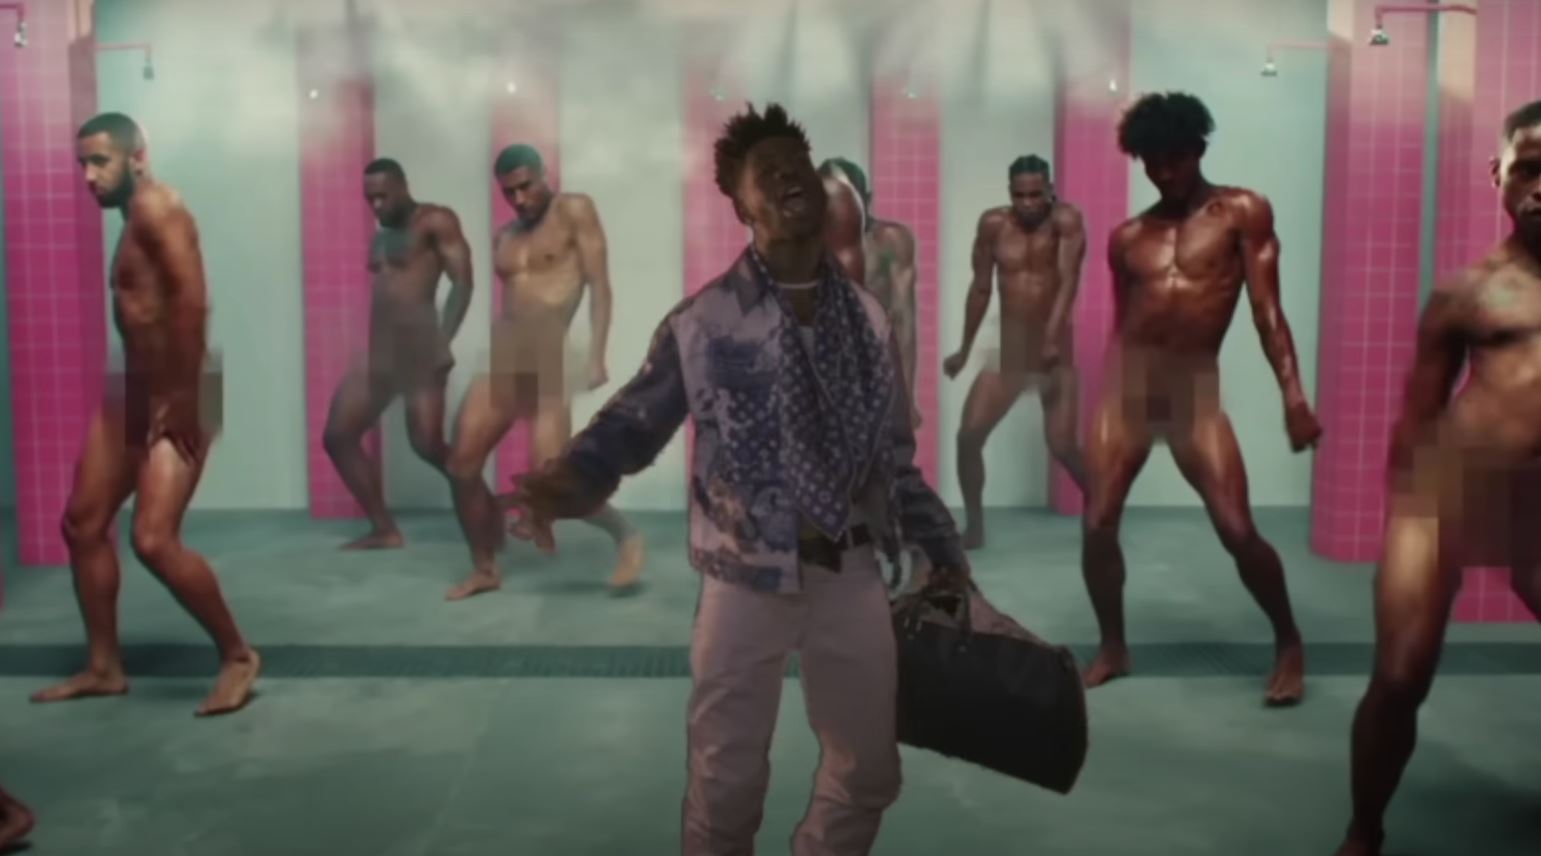 Видео! Сегодня вышел сингл от гей-репера Lil Nas X. Он там на каблуках, с голыми парнями в душе и с радужным флагом